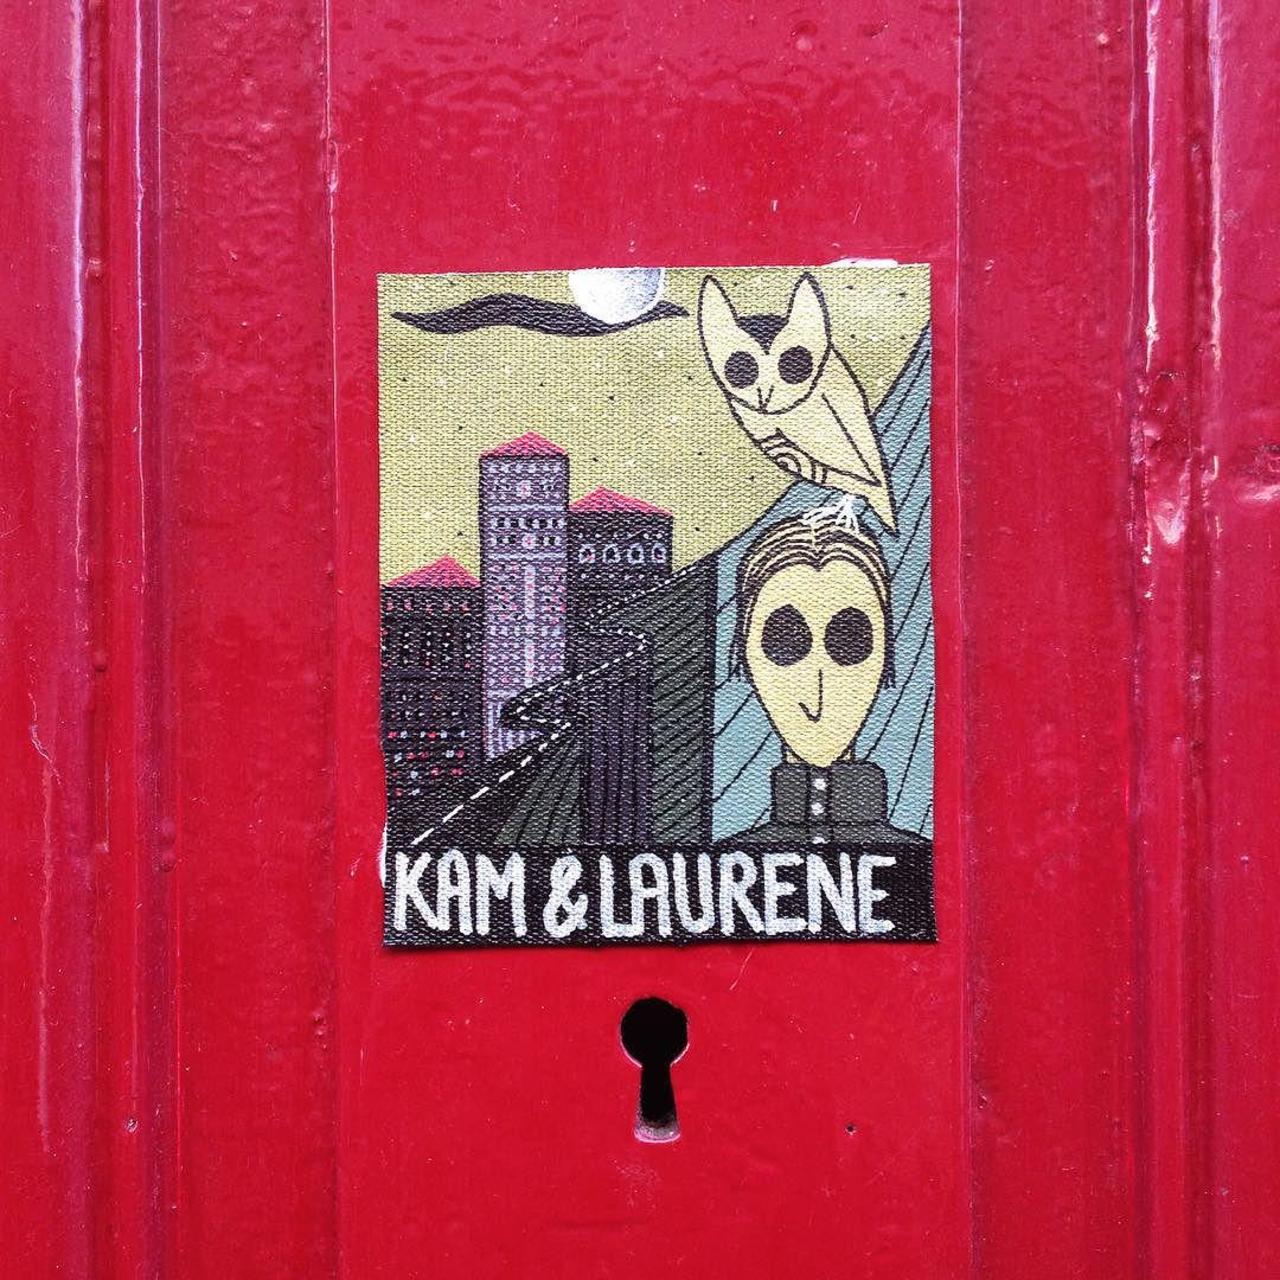 #Paris #graffiti photo by @kamlaurene http://ift.tt/1P69ODP #StreetArt http://t.co/HUp2IqLhF2